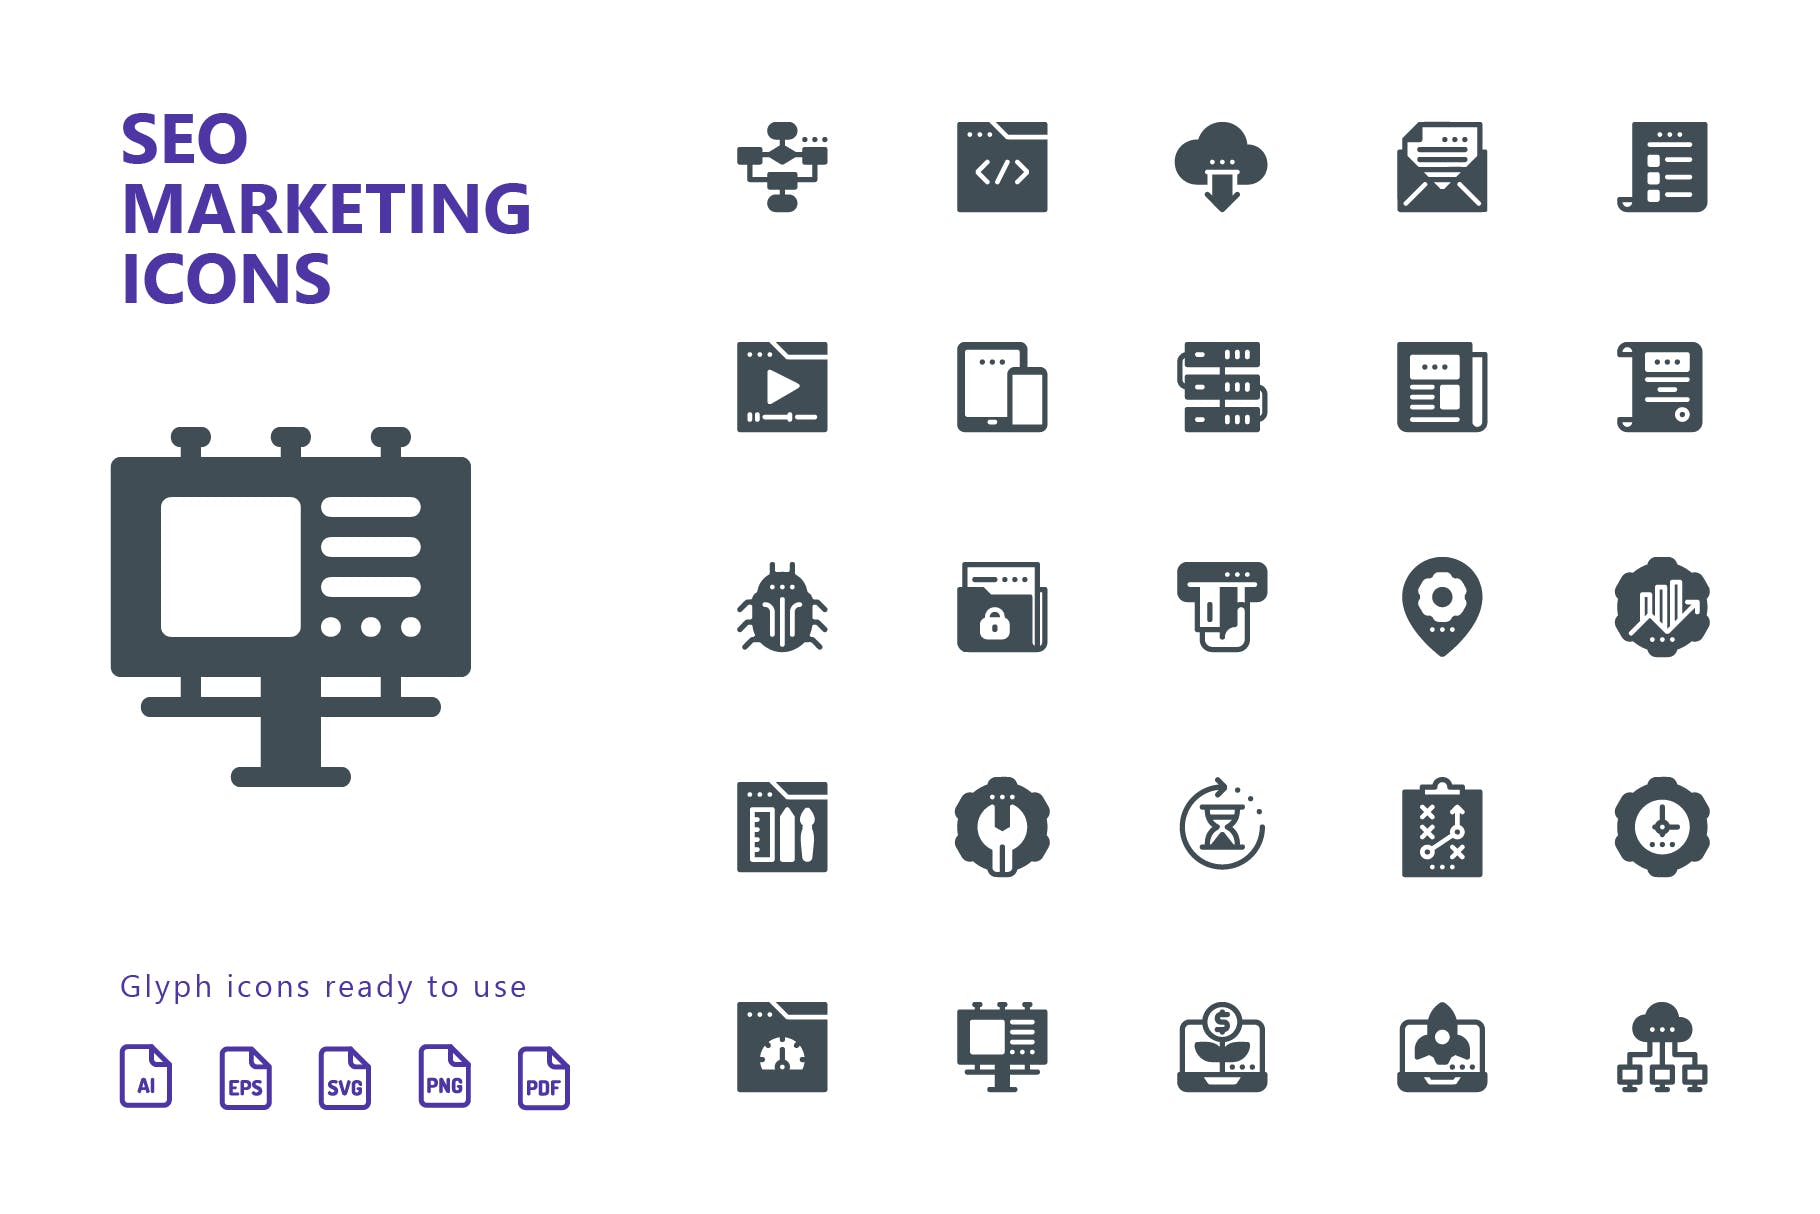 25枚SEO搜索引擎优化营销矢量字体蚂蚁素材精选图标v1 SEO Marketing Glyph Icons插图(1)